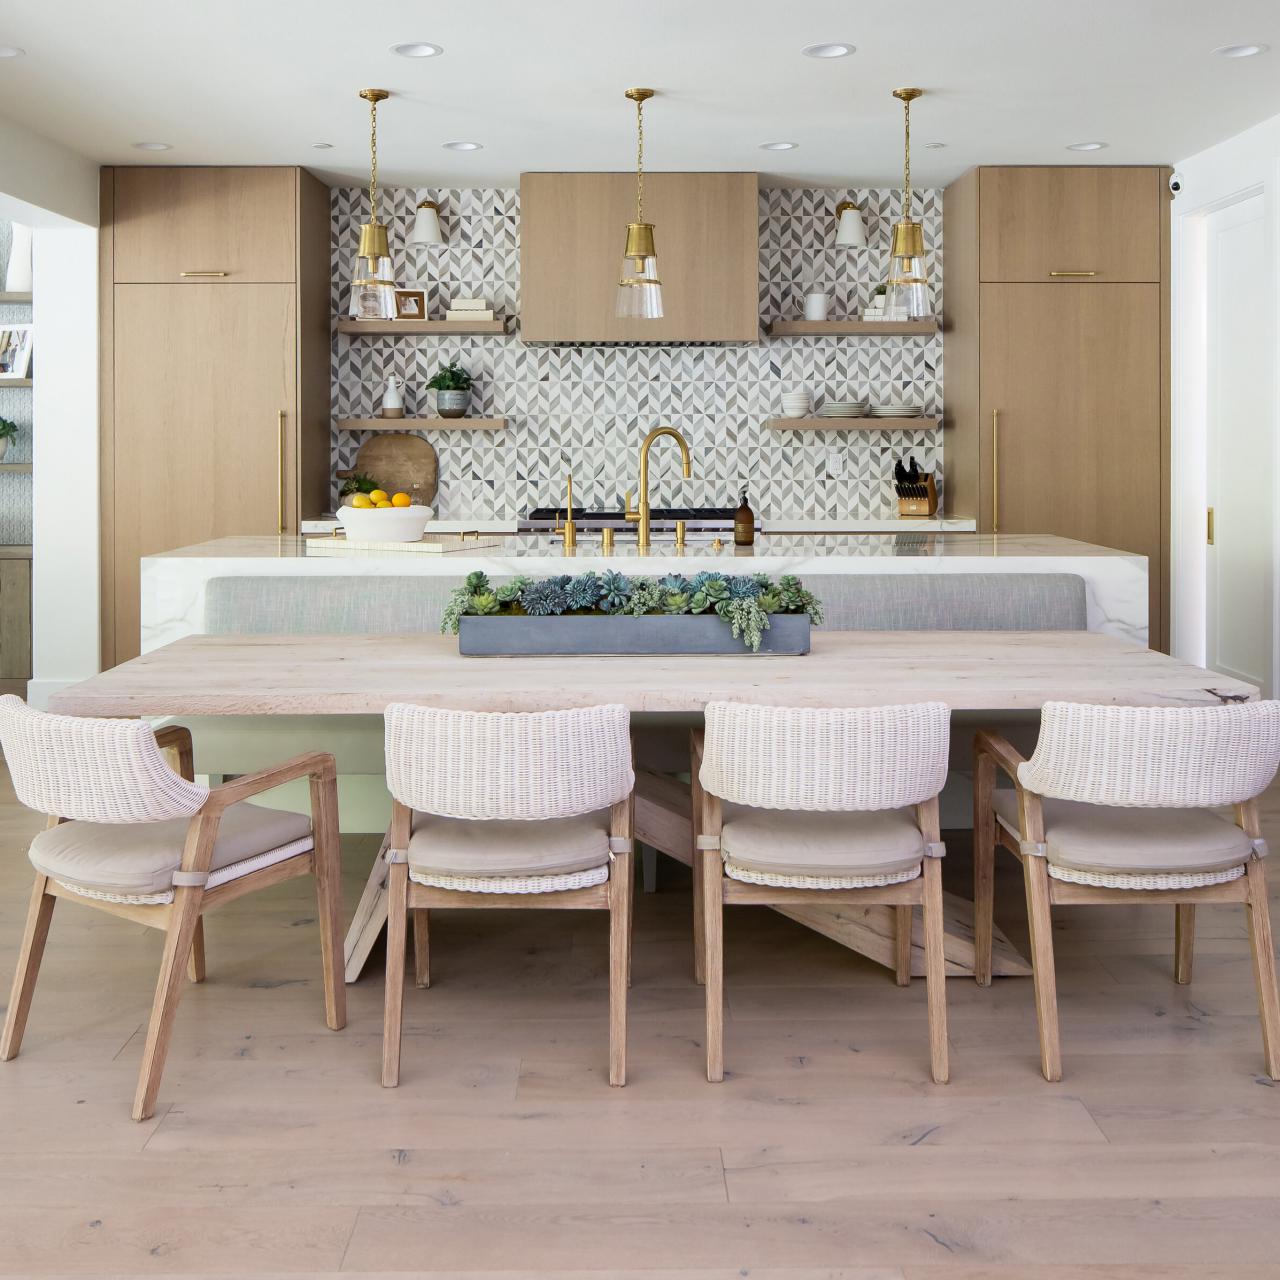 Best Kitchen Flooring Options Choose, Should Kitchen Be Tile Or Hardwood